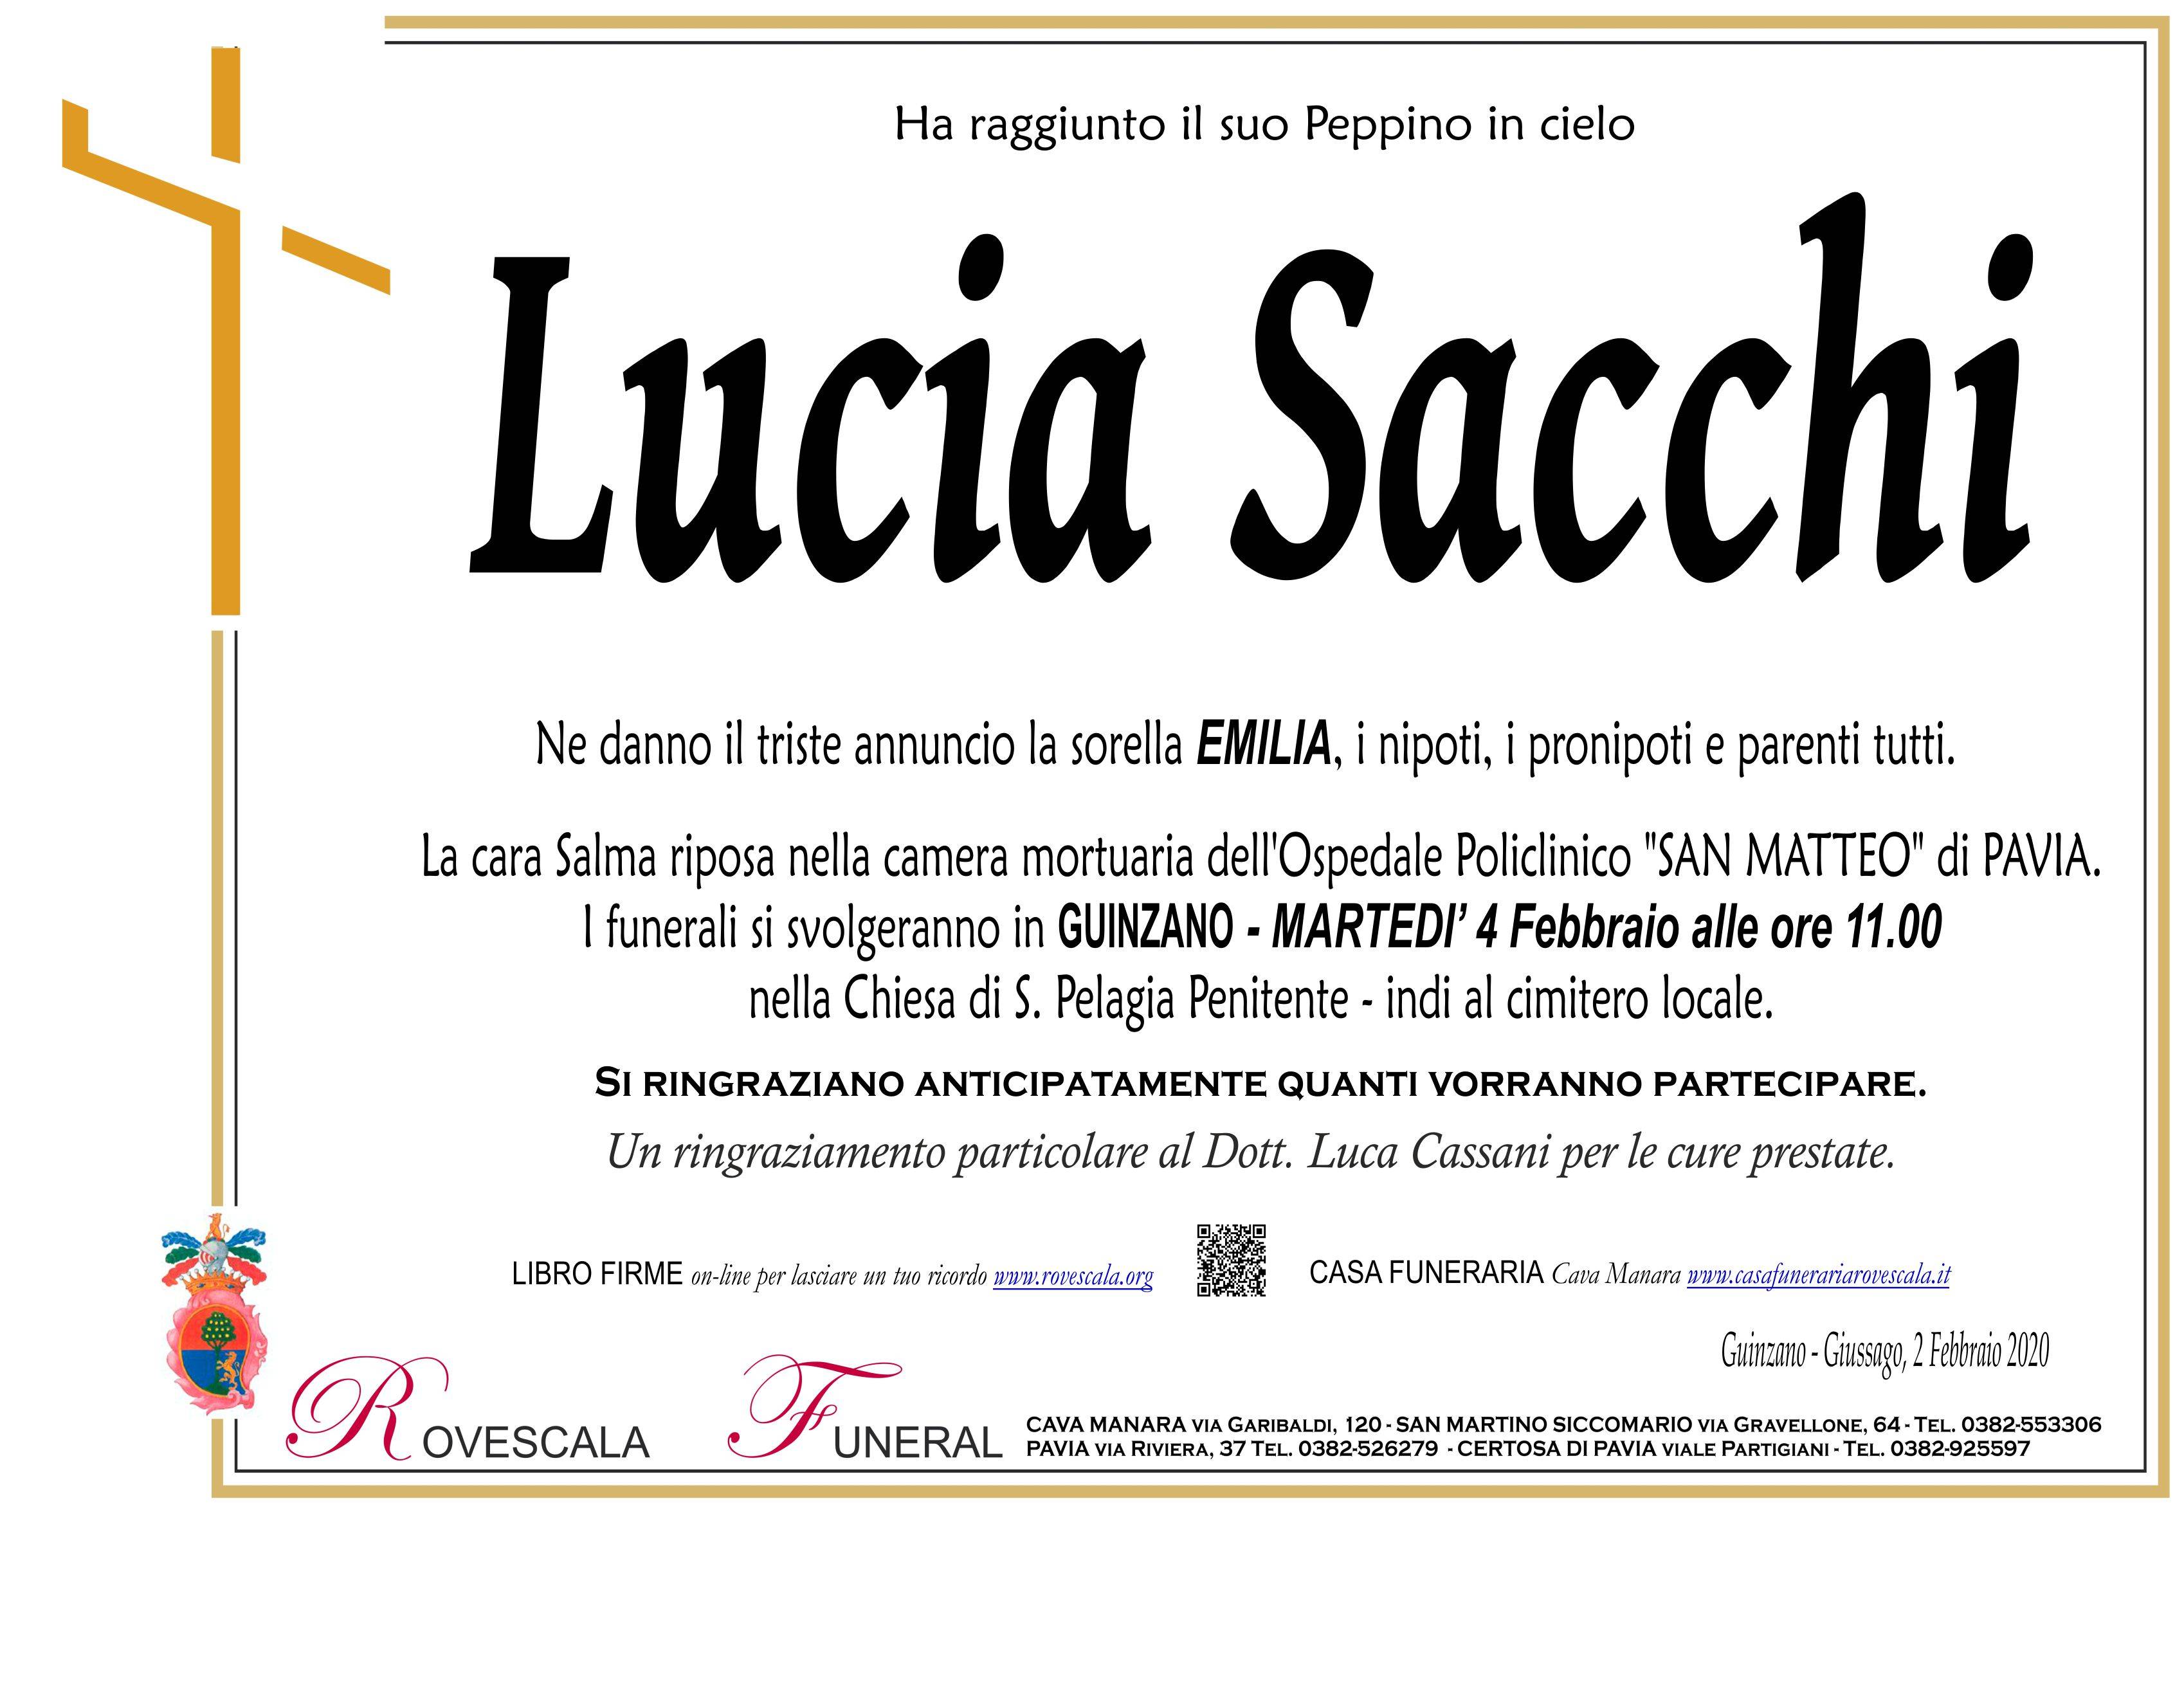 Lucia Sacchi